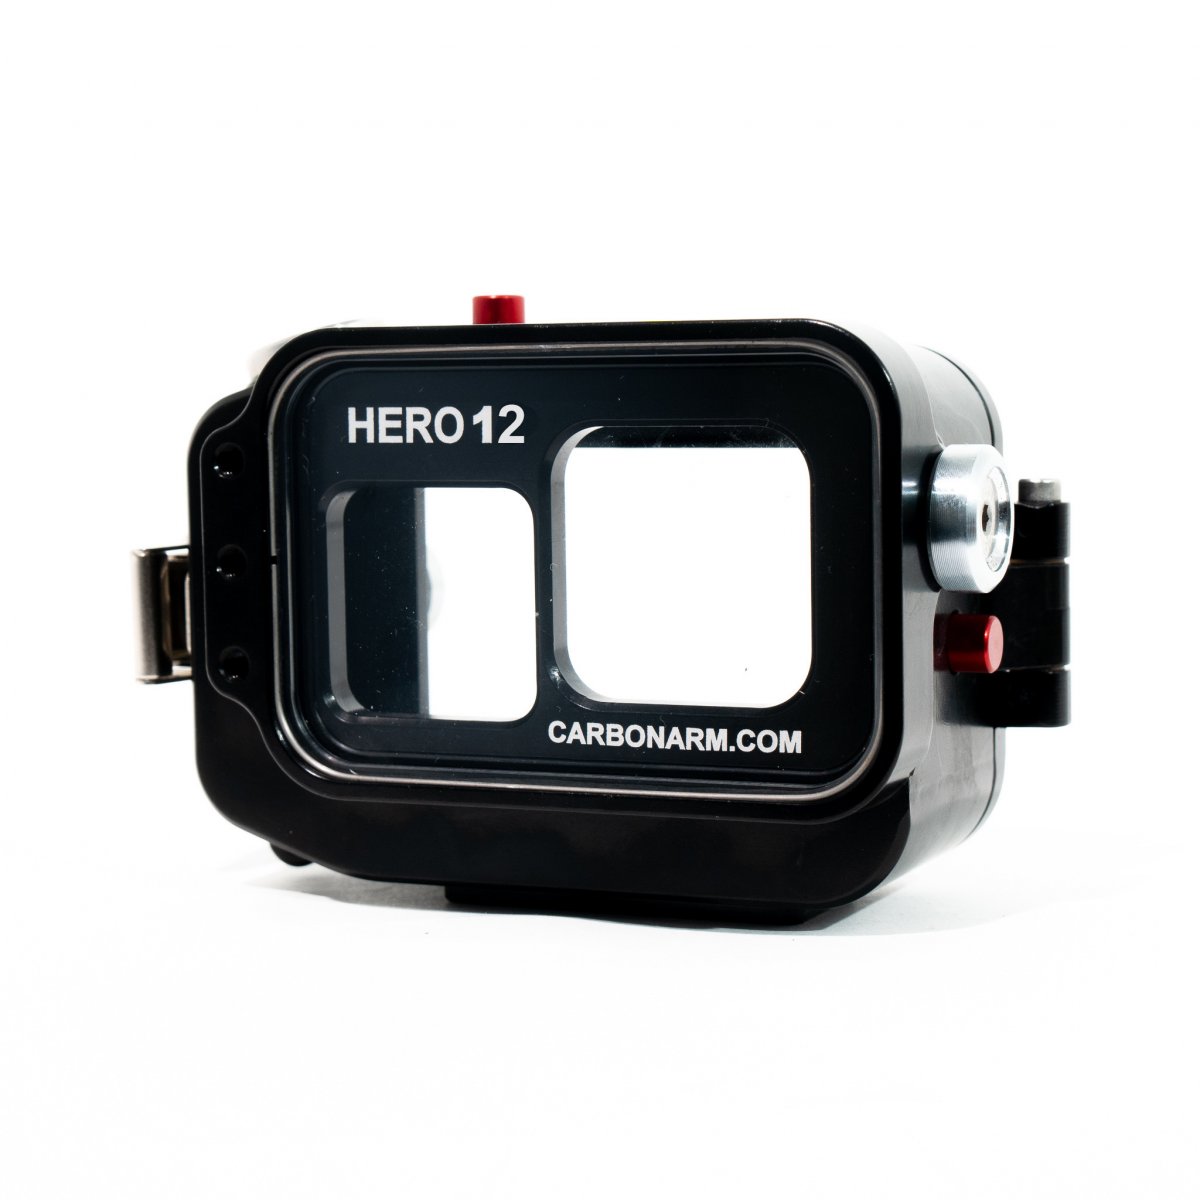 Caisson de protection pour GoPro Hero10/11/12 Black et Hero9 Black